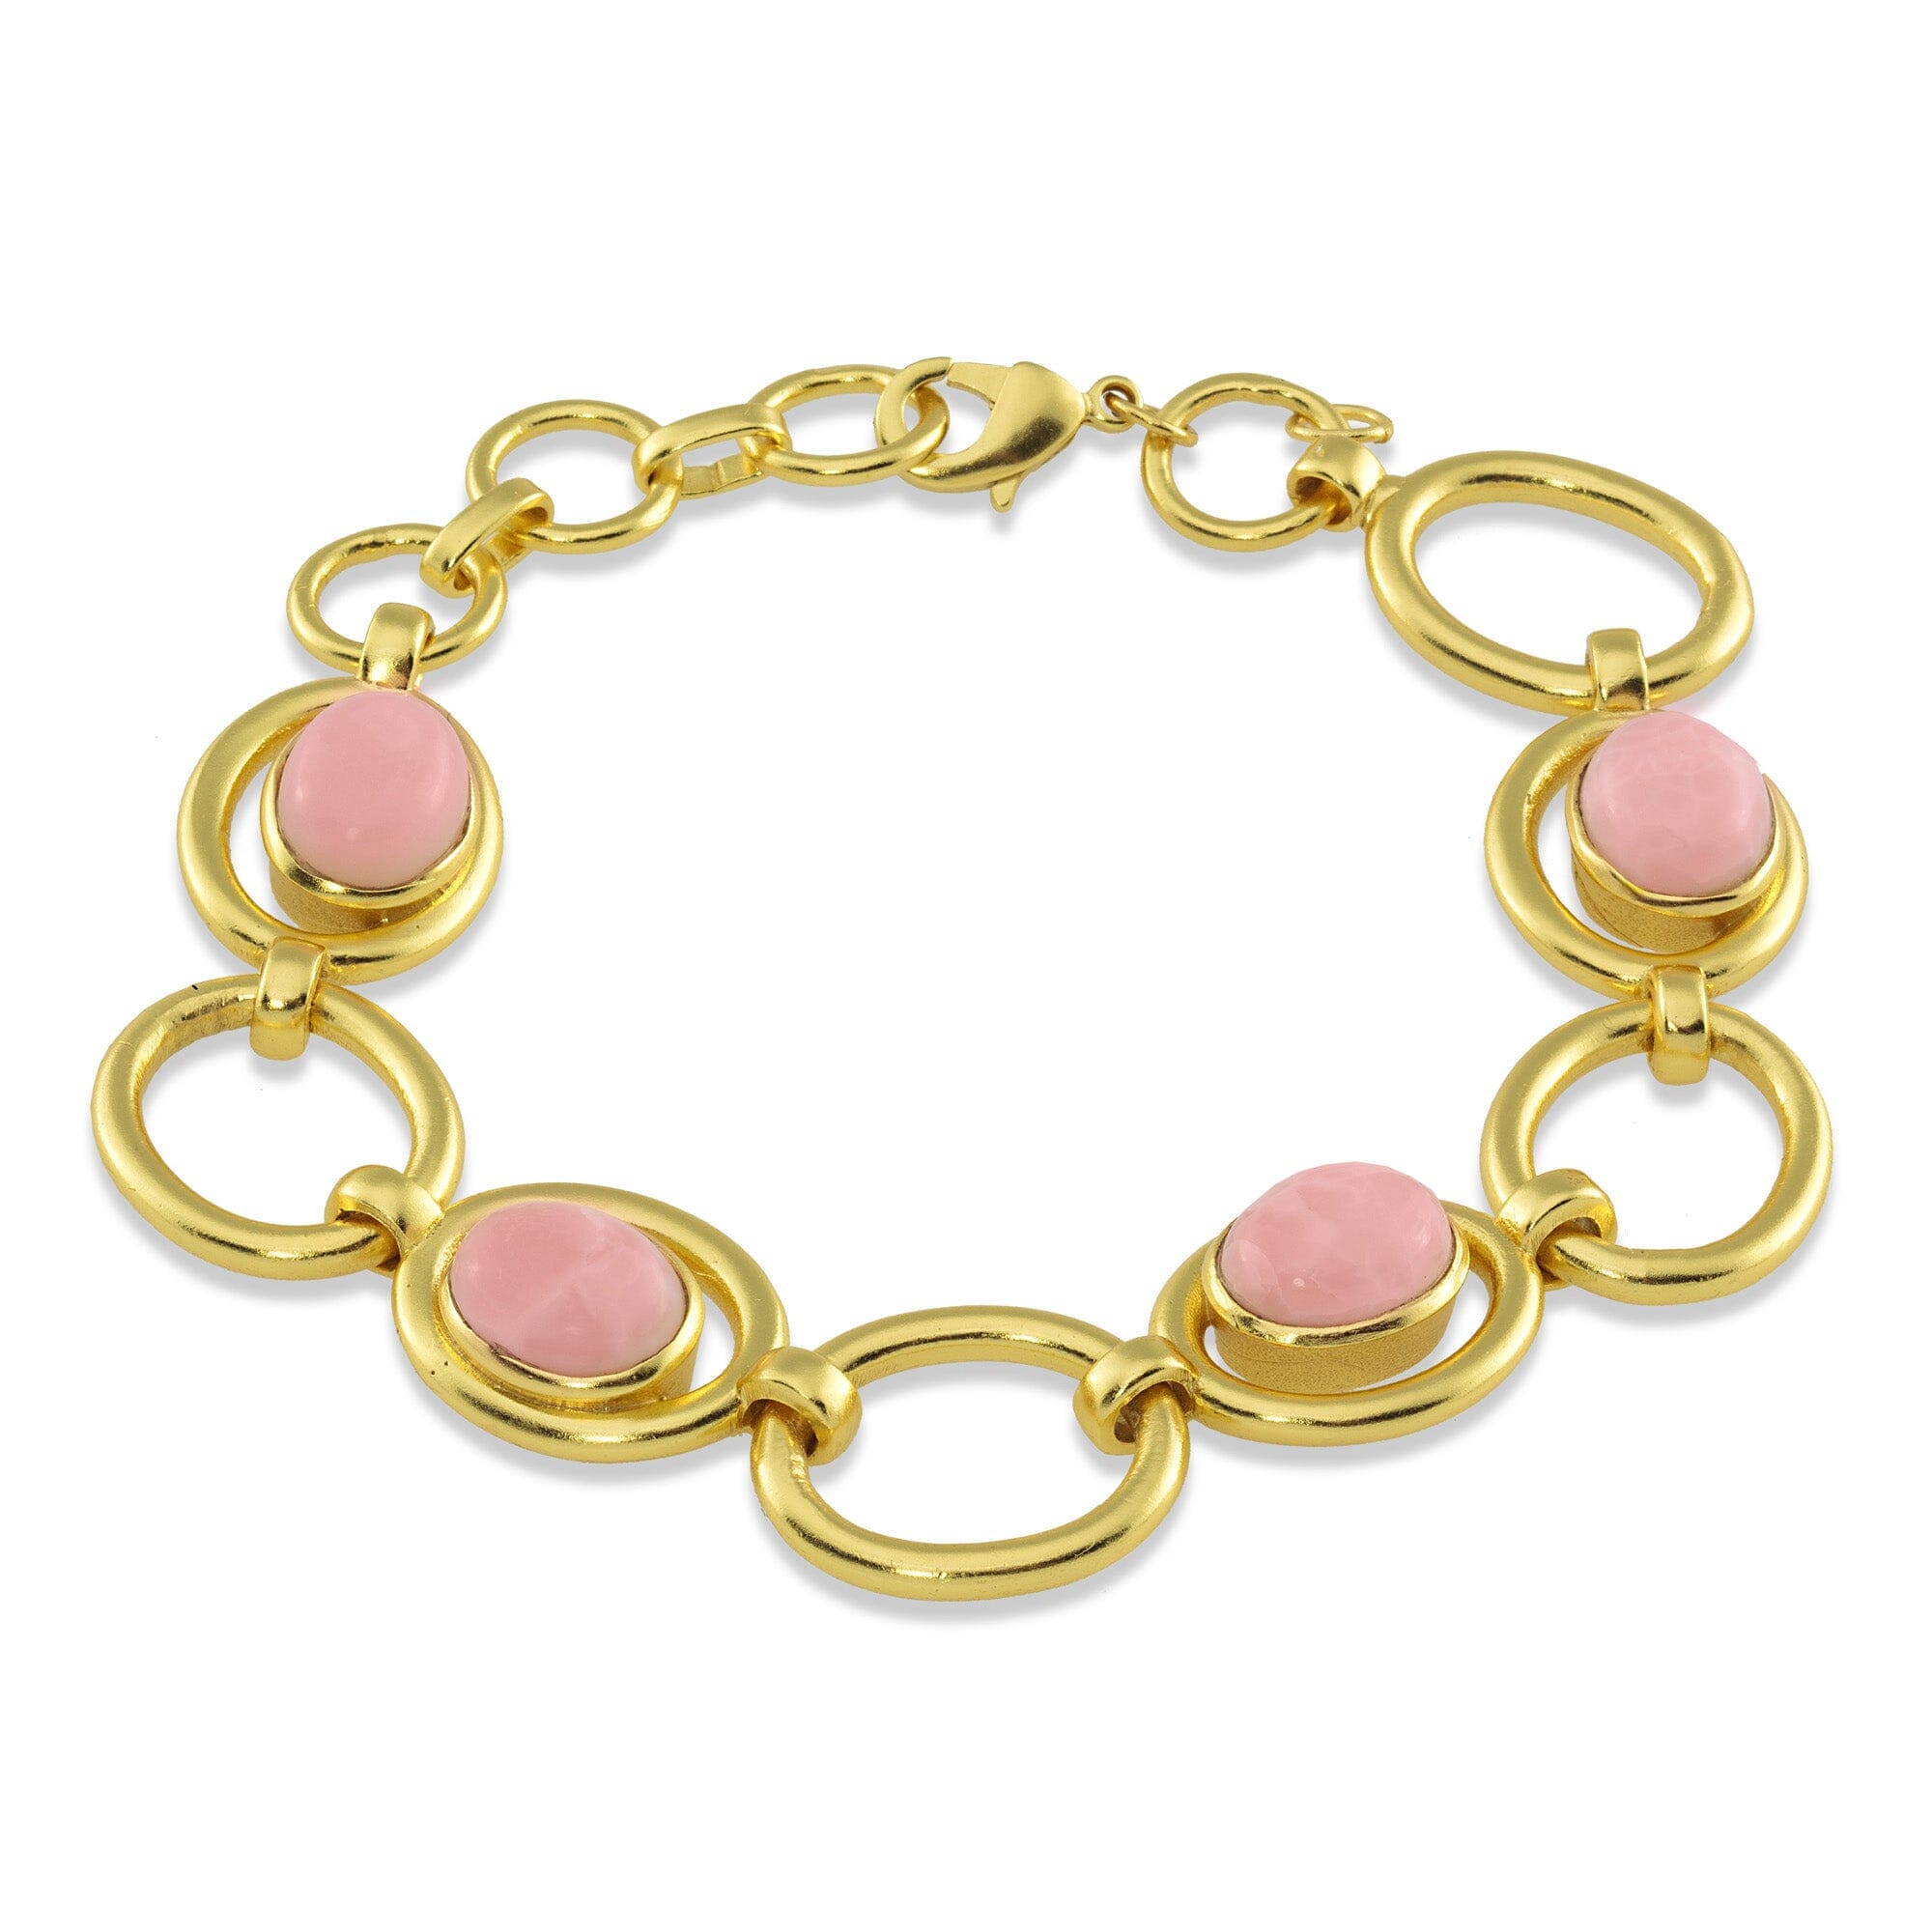 1 - 4 stone bracelet pink opal Jimena Alejandra 